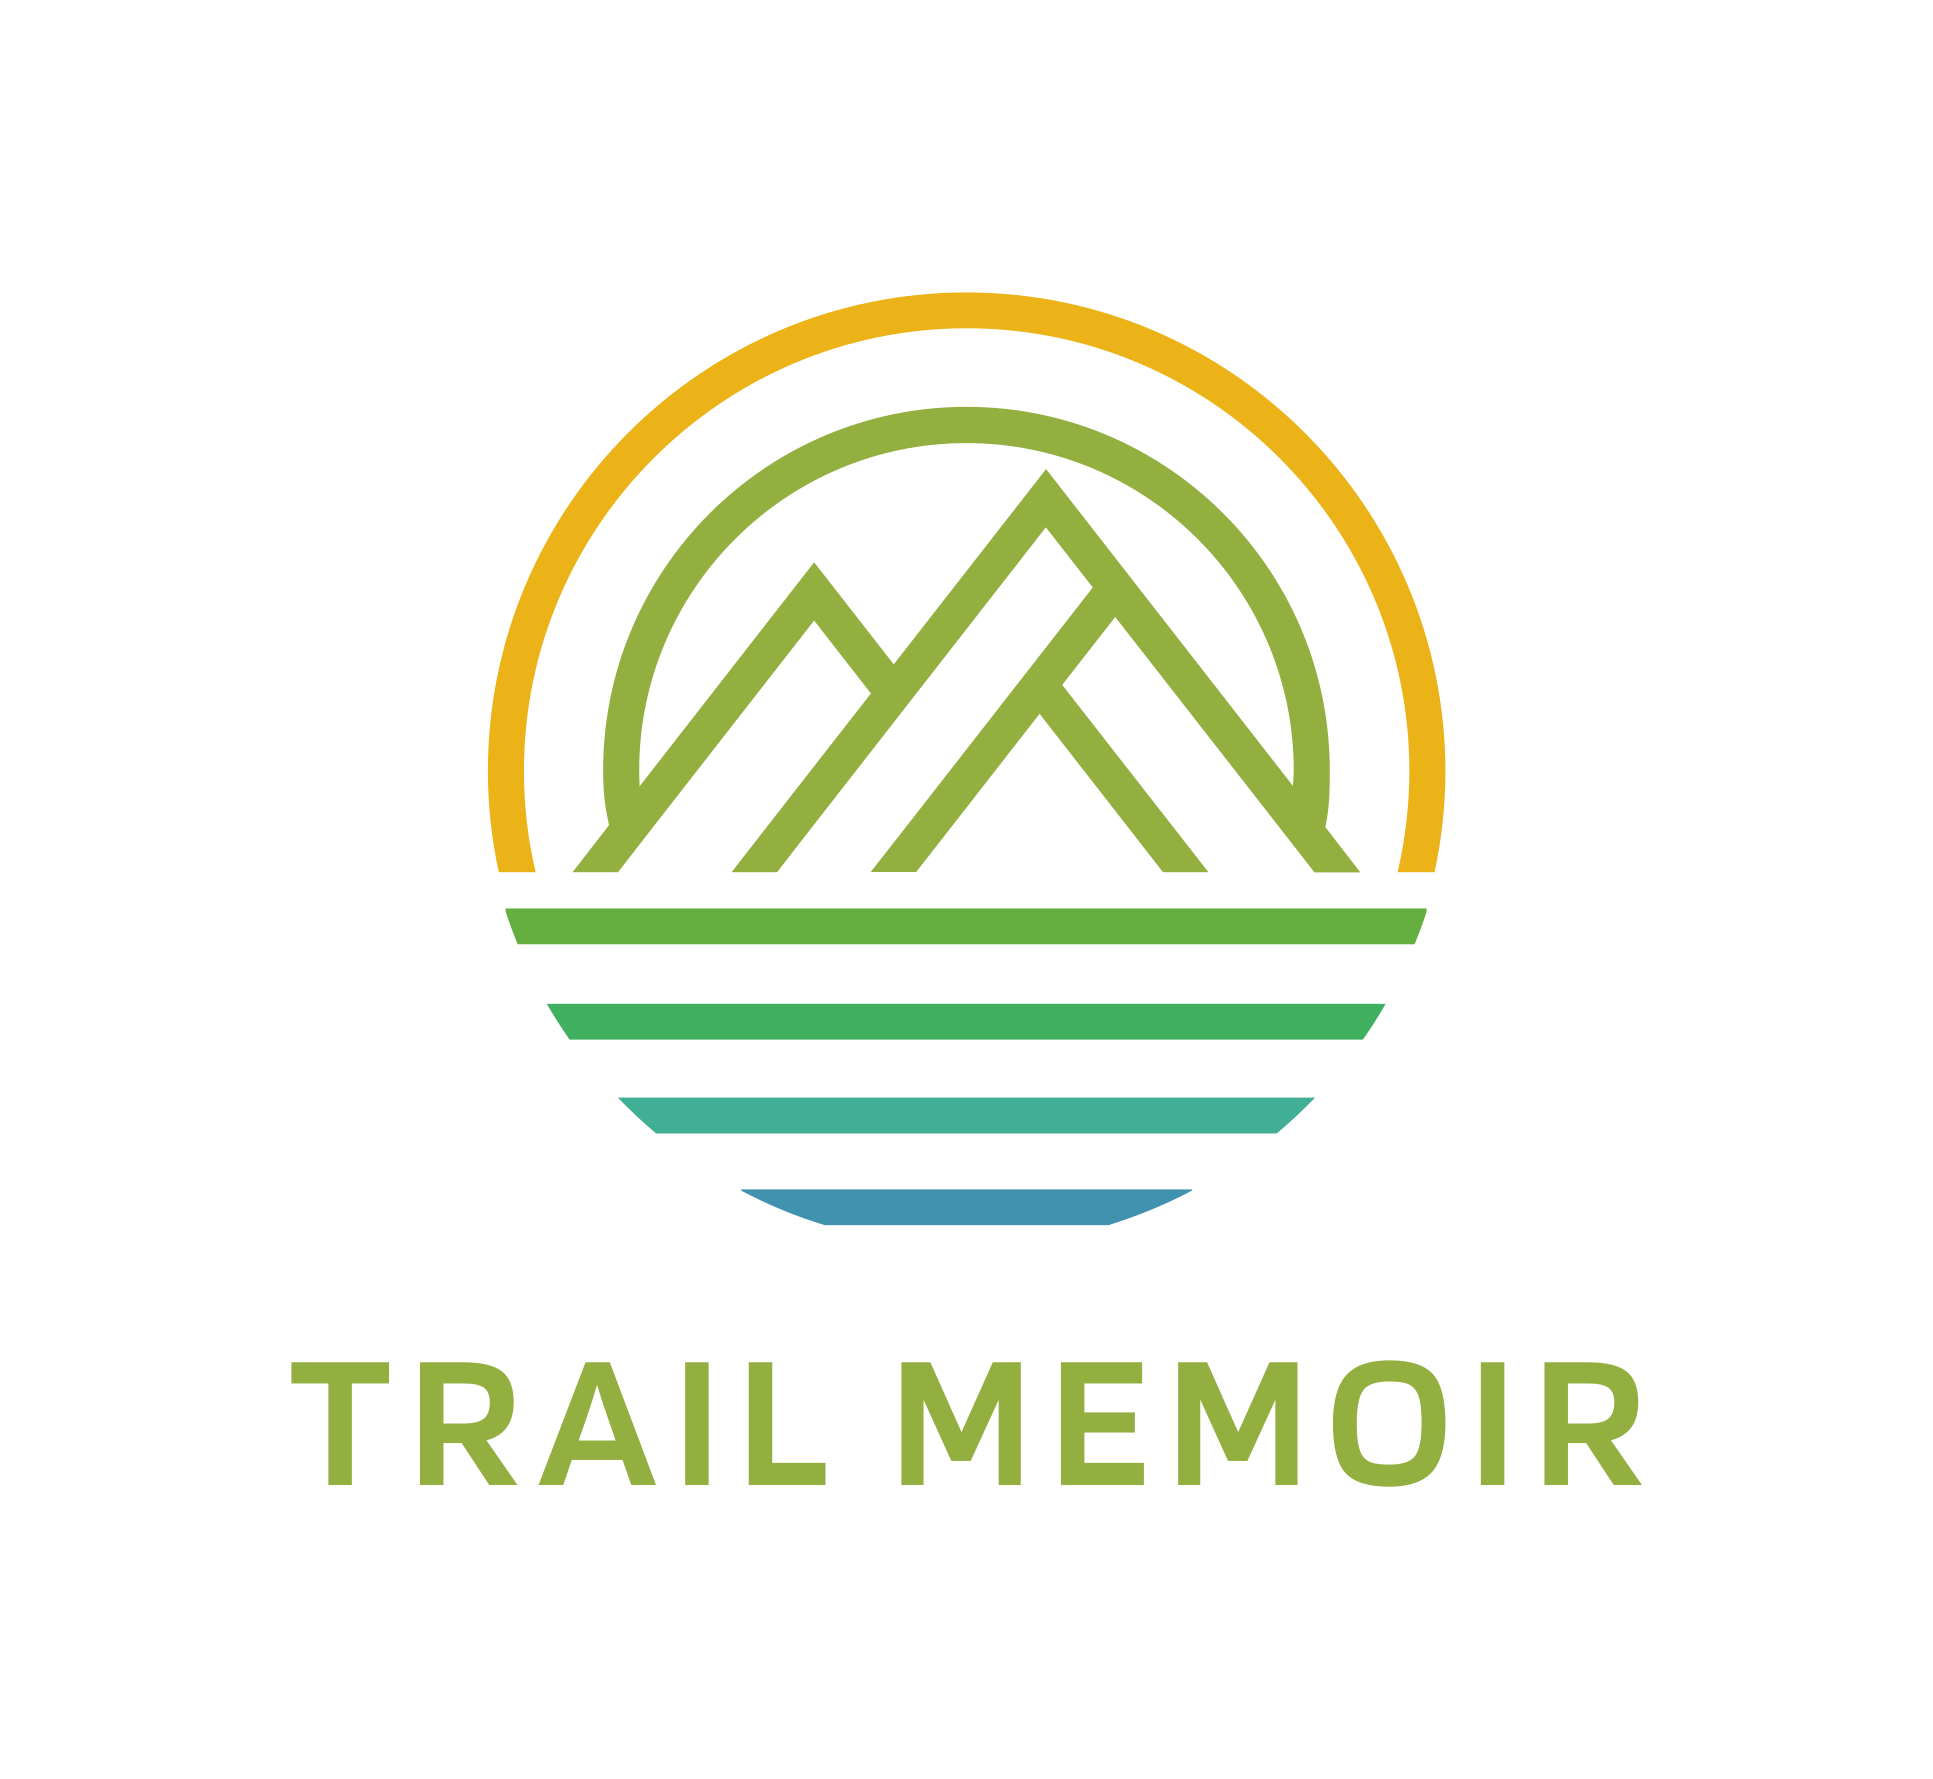 Trail Memoir